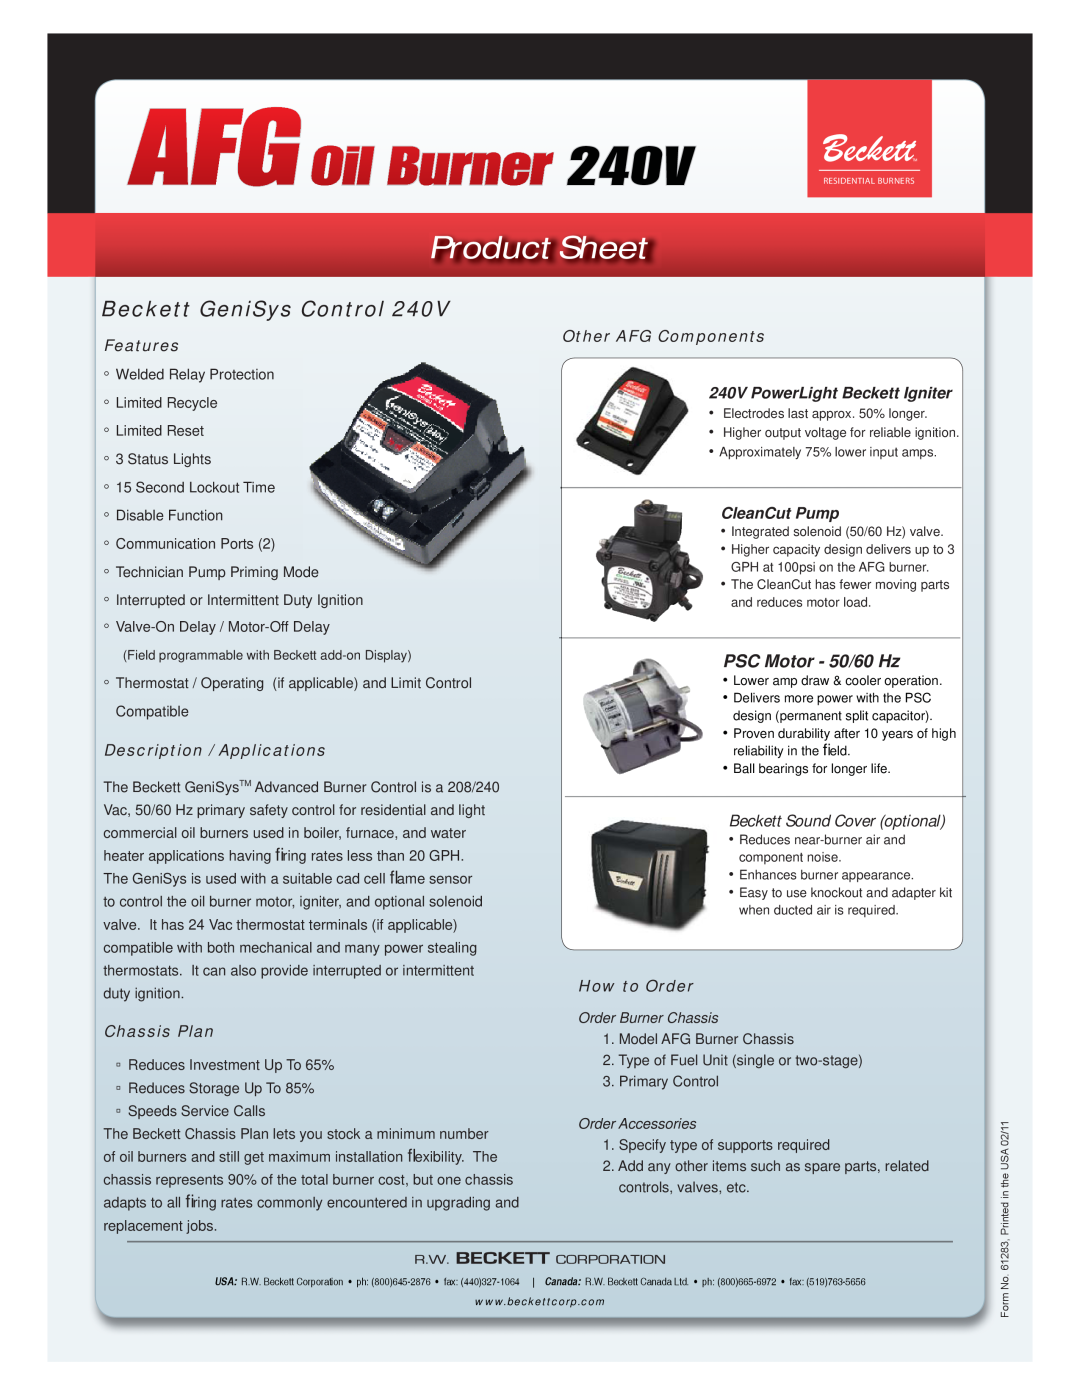 Beckett 240V Beckett GeniSys Control, PSC Motor - 50/60 Hz, Beckett Sound Cover optional, AFGOil Burner, Product Sheet 